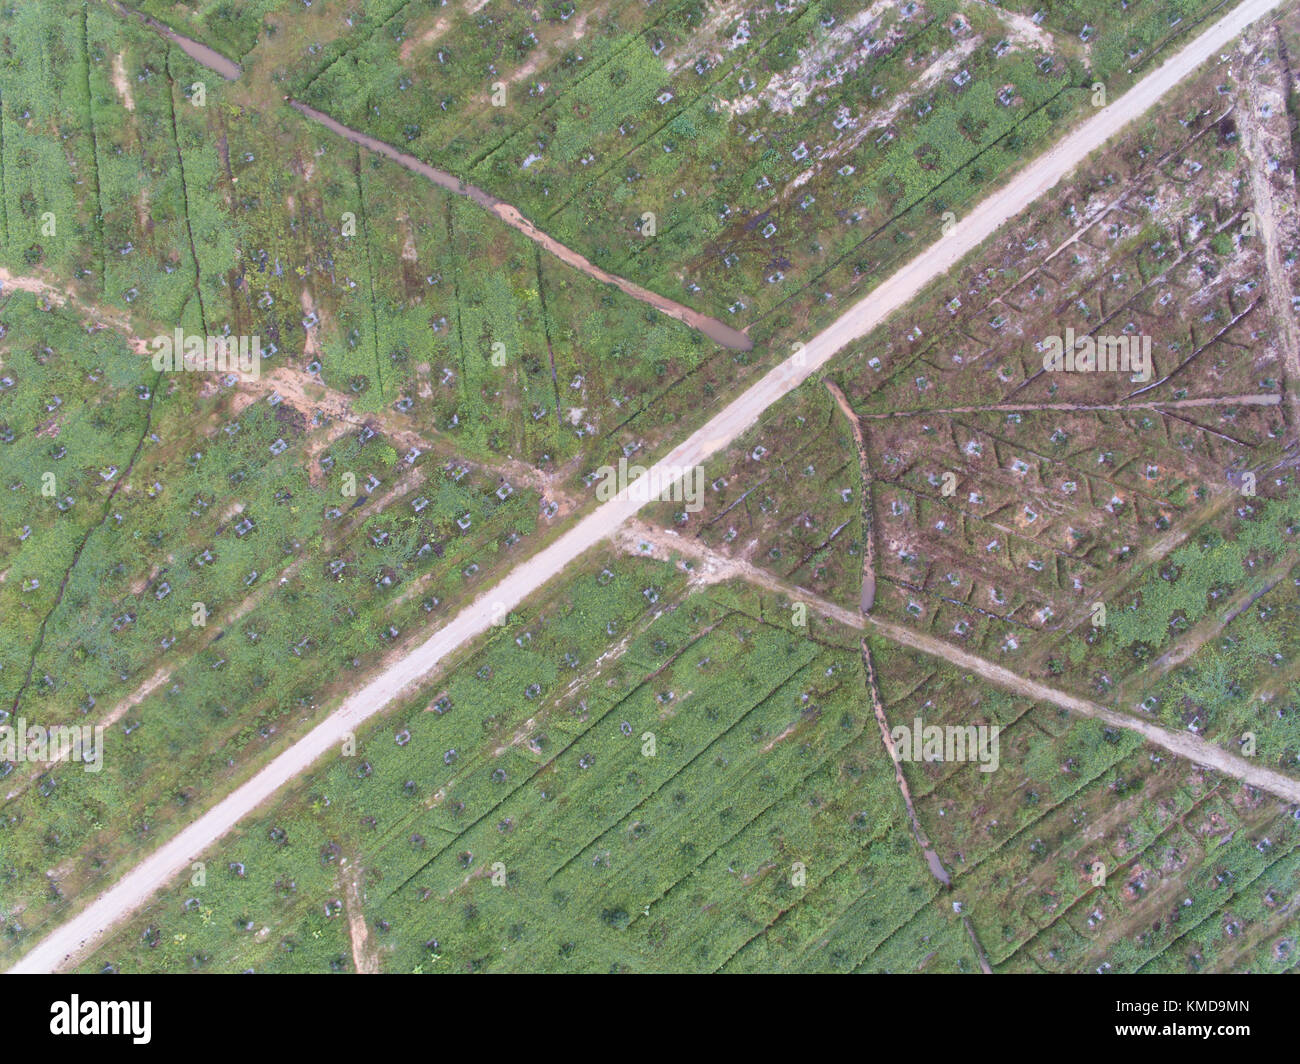 Vue aérienne de la plantation de palmiers à huile situé à Kuala krai, Kelantan, Malaisie, Asie de l'Est. L'un des plus gros comodity en Malaisie Banque D'Images